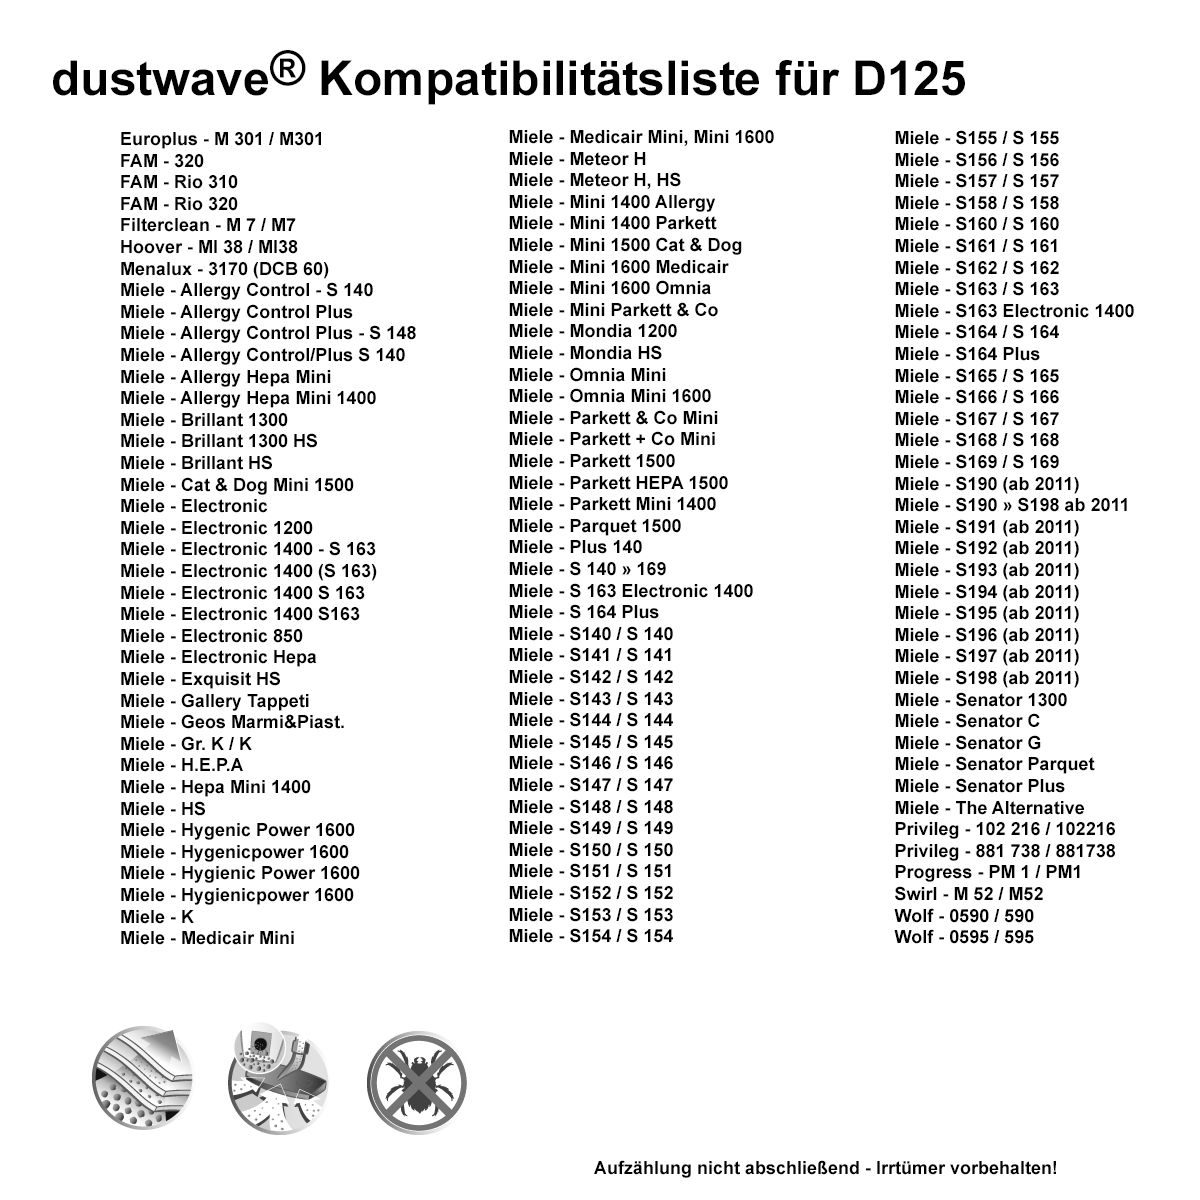 Dustwave® 5 Staubsaugerbeutel für Miele Mini 1400 Allergy - hocheffizient, mehrlagiges Mikrovlies mit Hygieneverschluss - Made in Germany